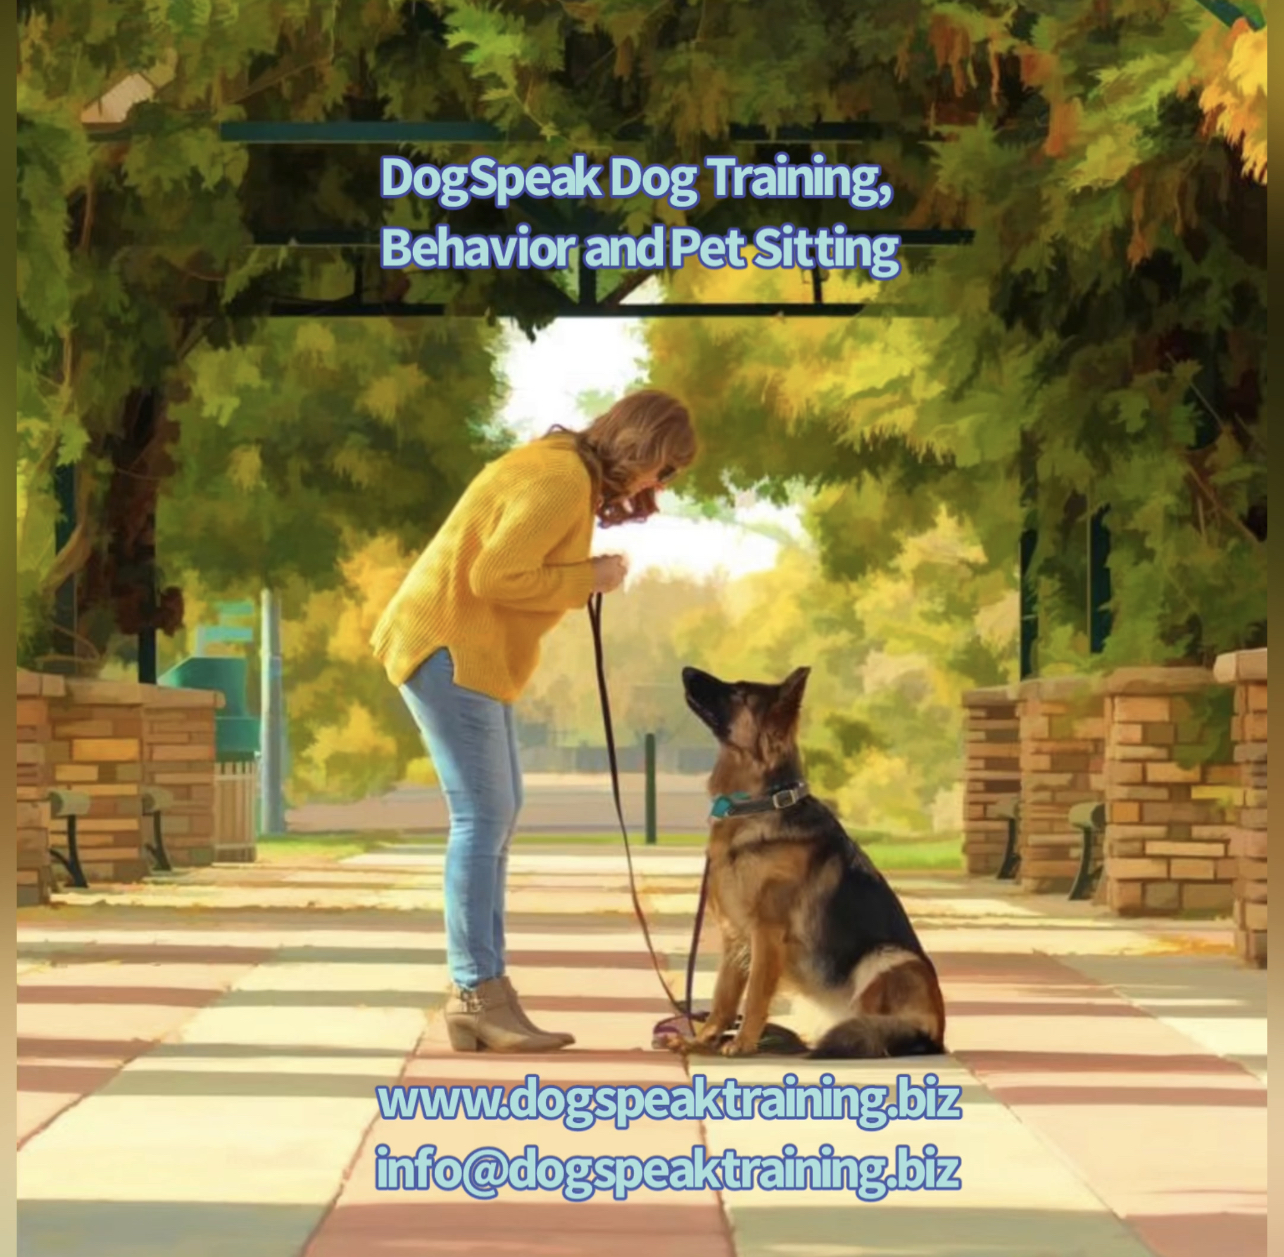 DogSpeak Dog Training, Behavior and Pet Sitting